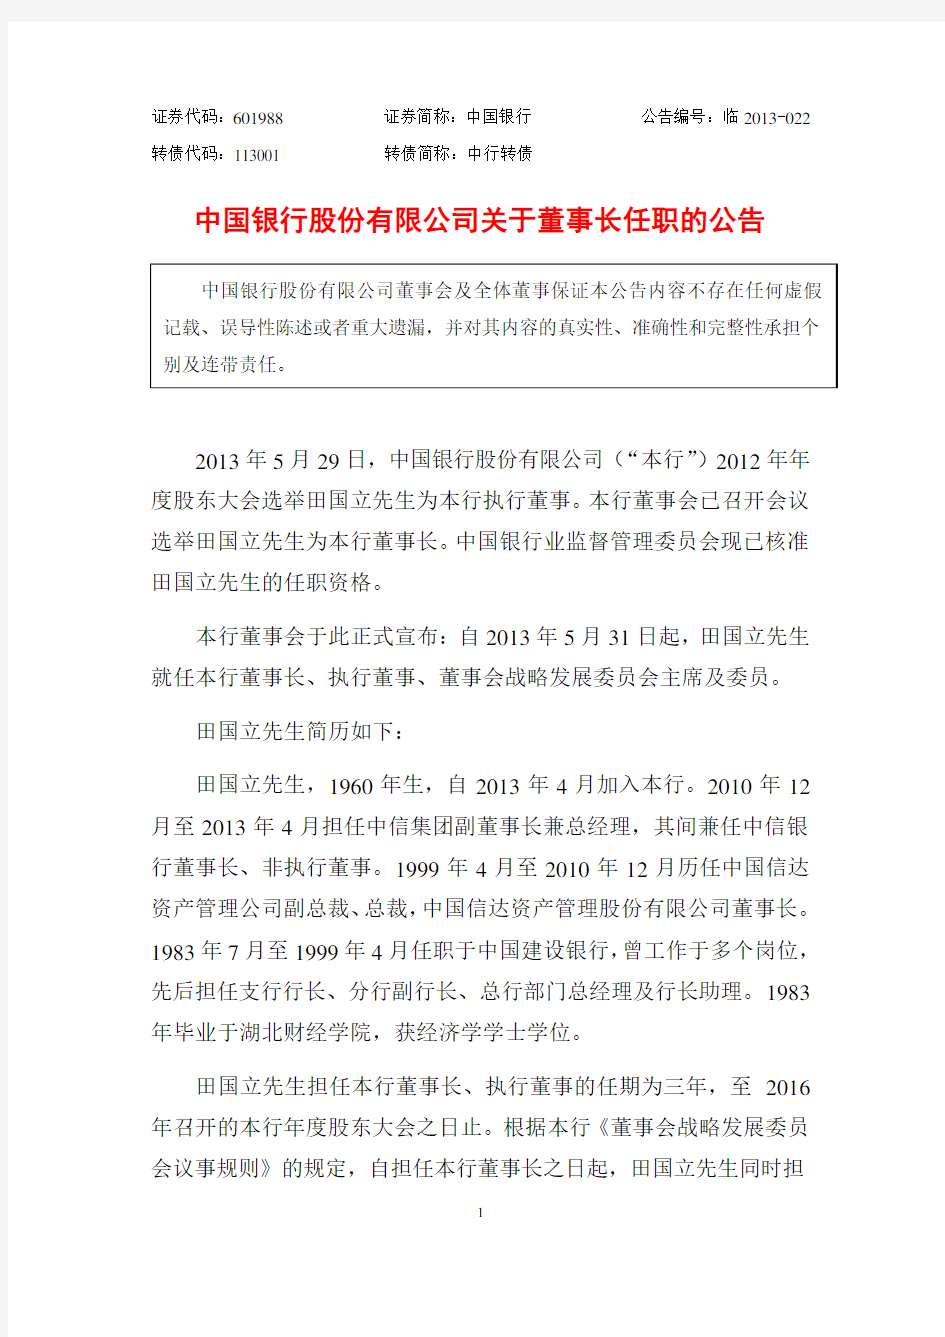 中国银行股份有限公司关于董事长任职的公告